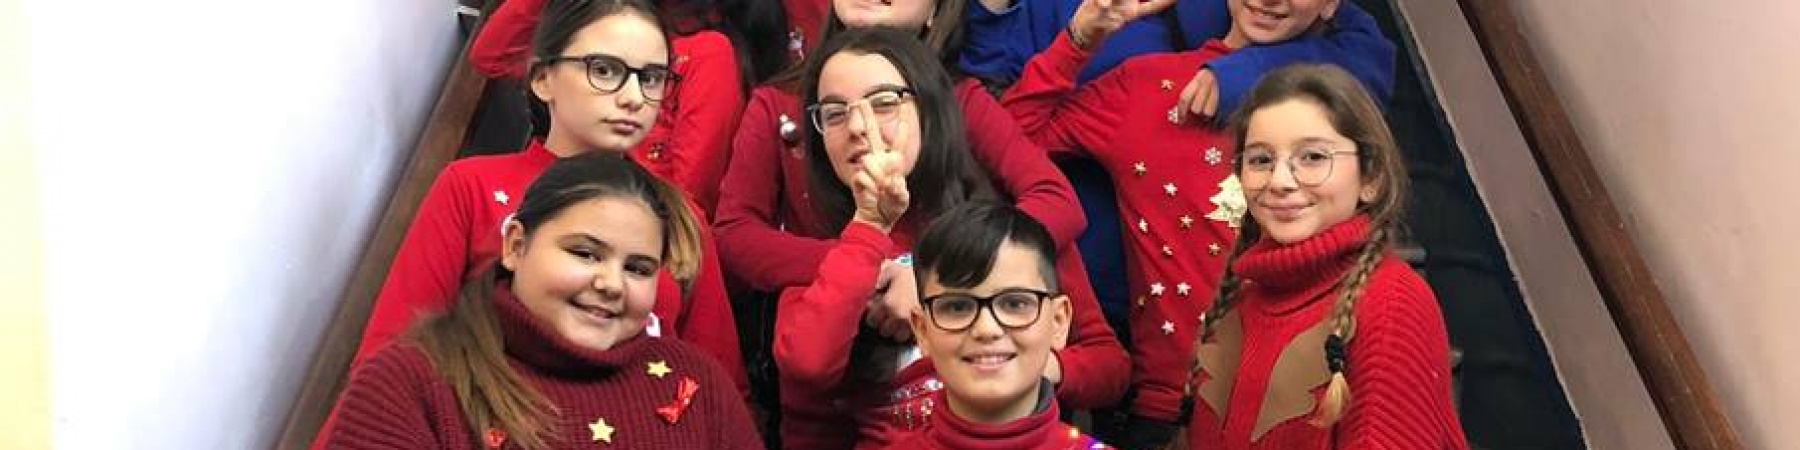 bambini sulle scale che indossano maglioni rossi